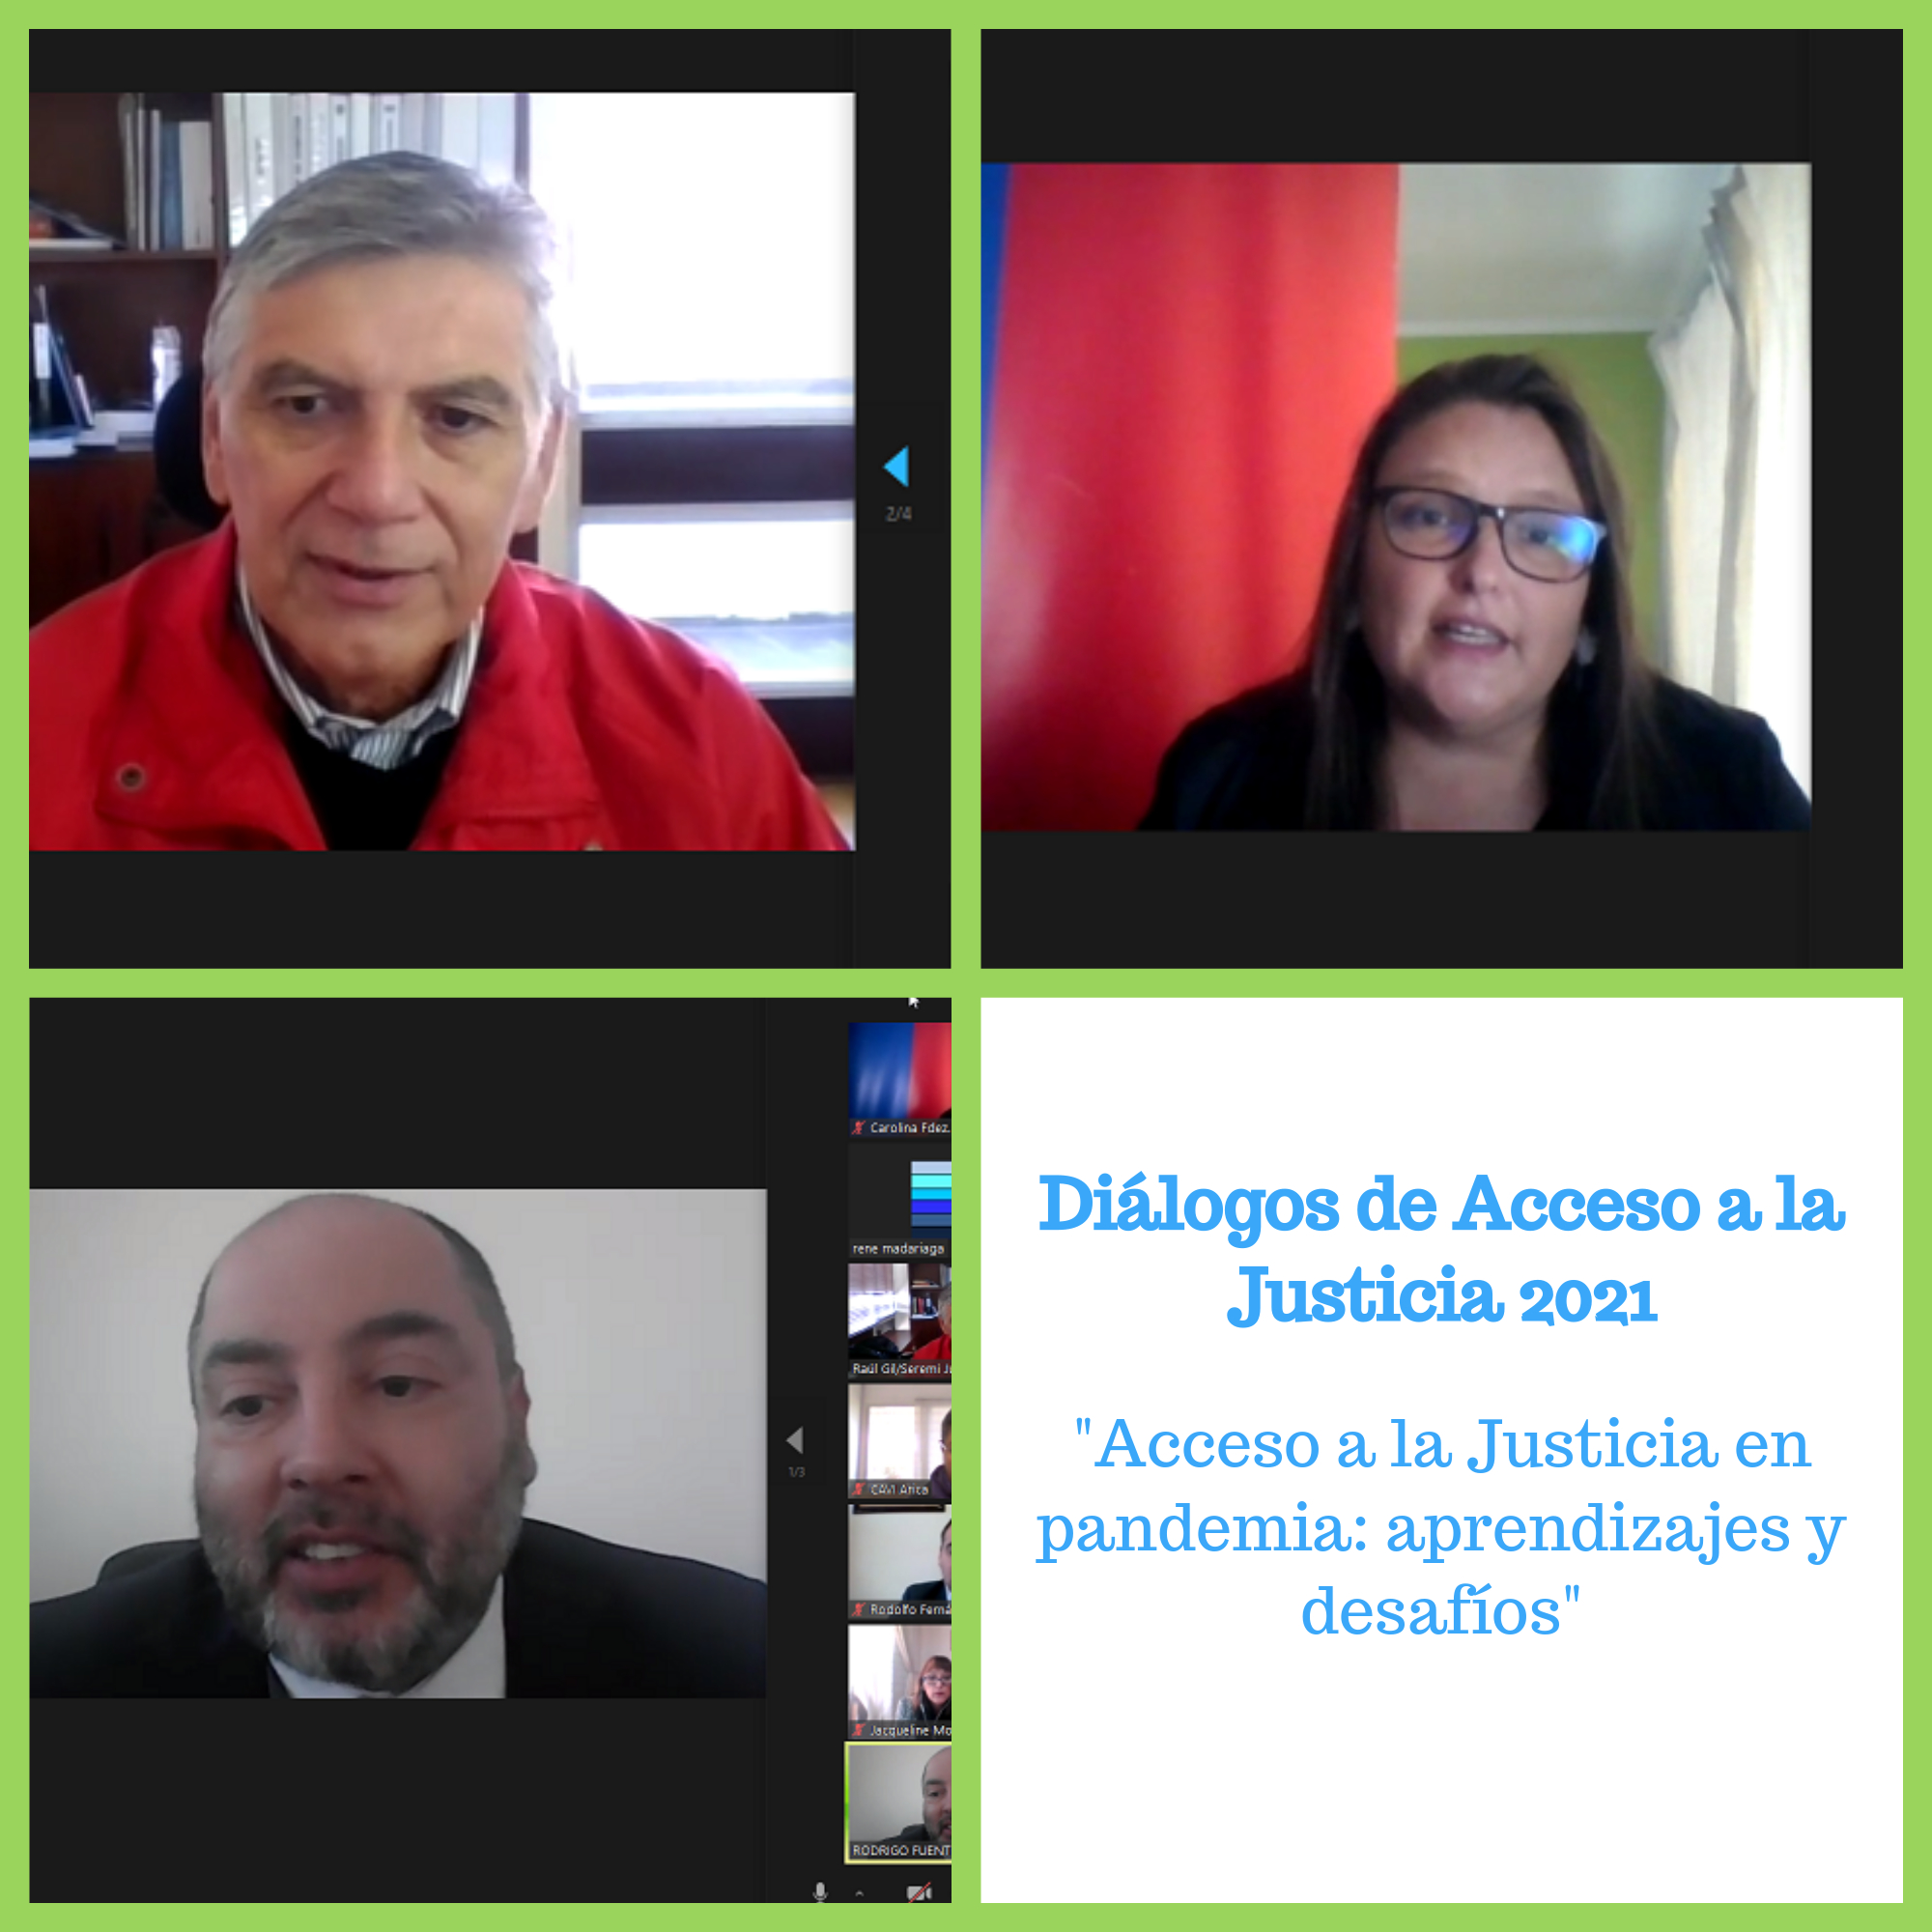 Diálogos de Acceso a la Justicia De Arica y Parinacota Acuerdan Aspectos Laborales y Comunicacionales